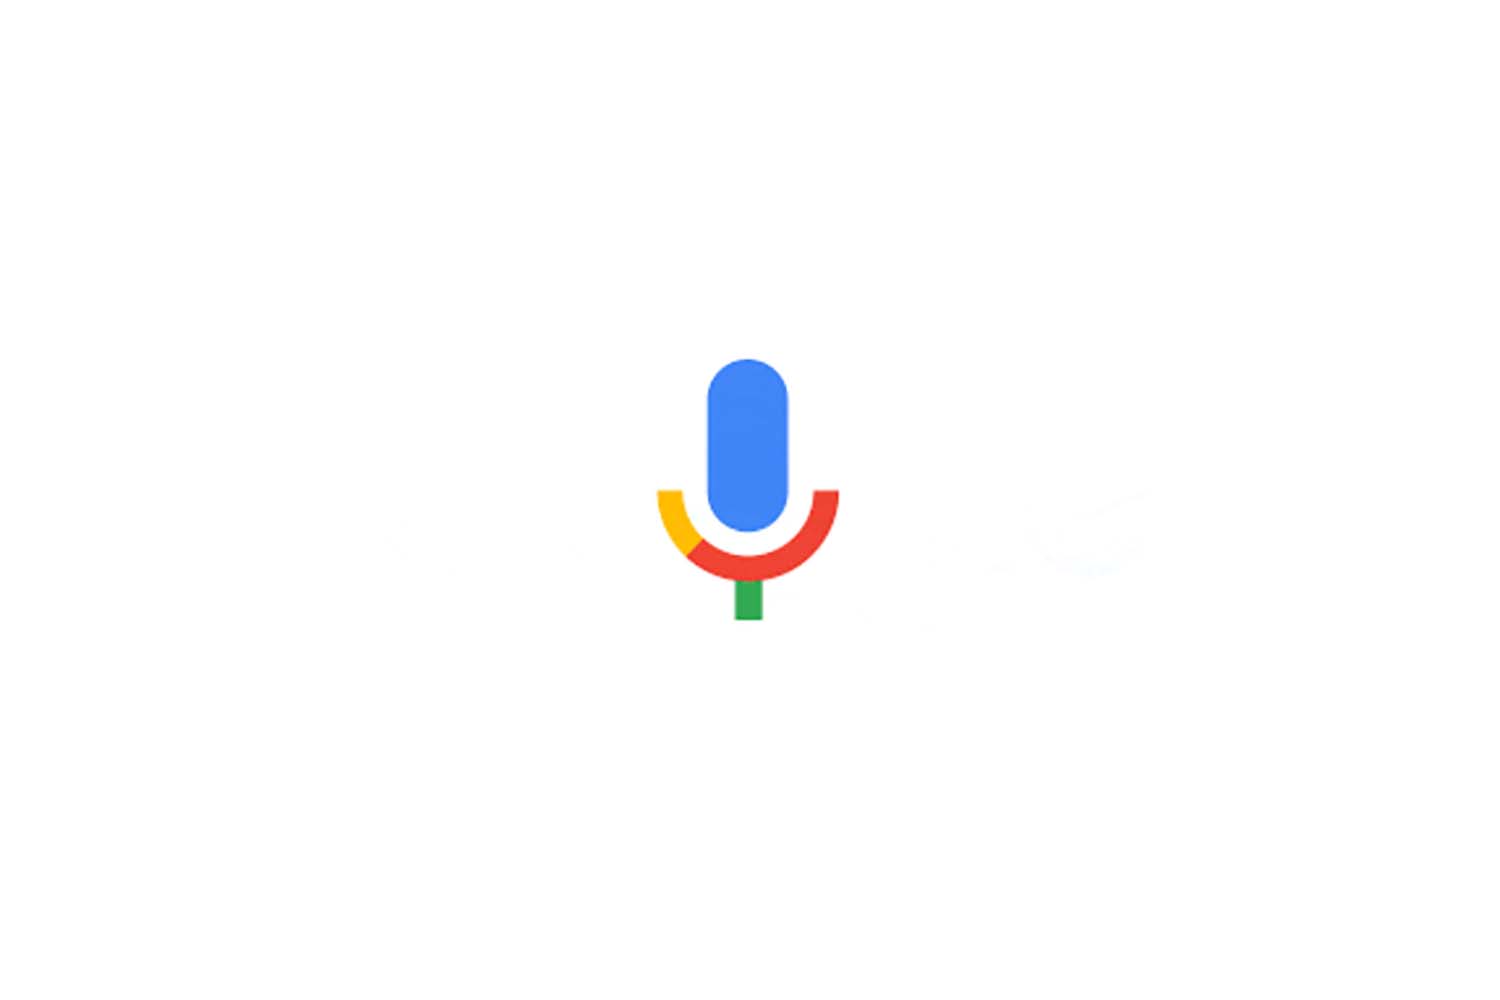 Google's multicolored microphone icon